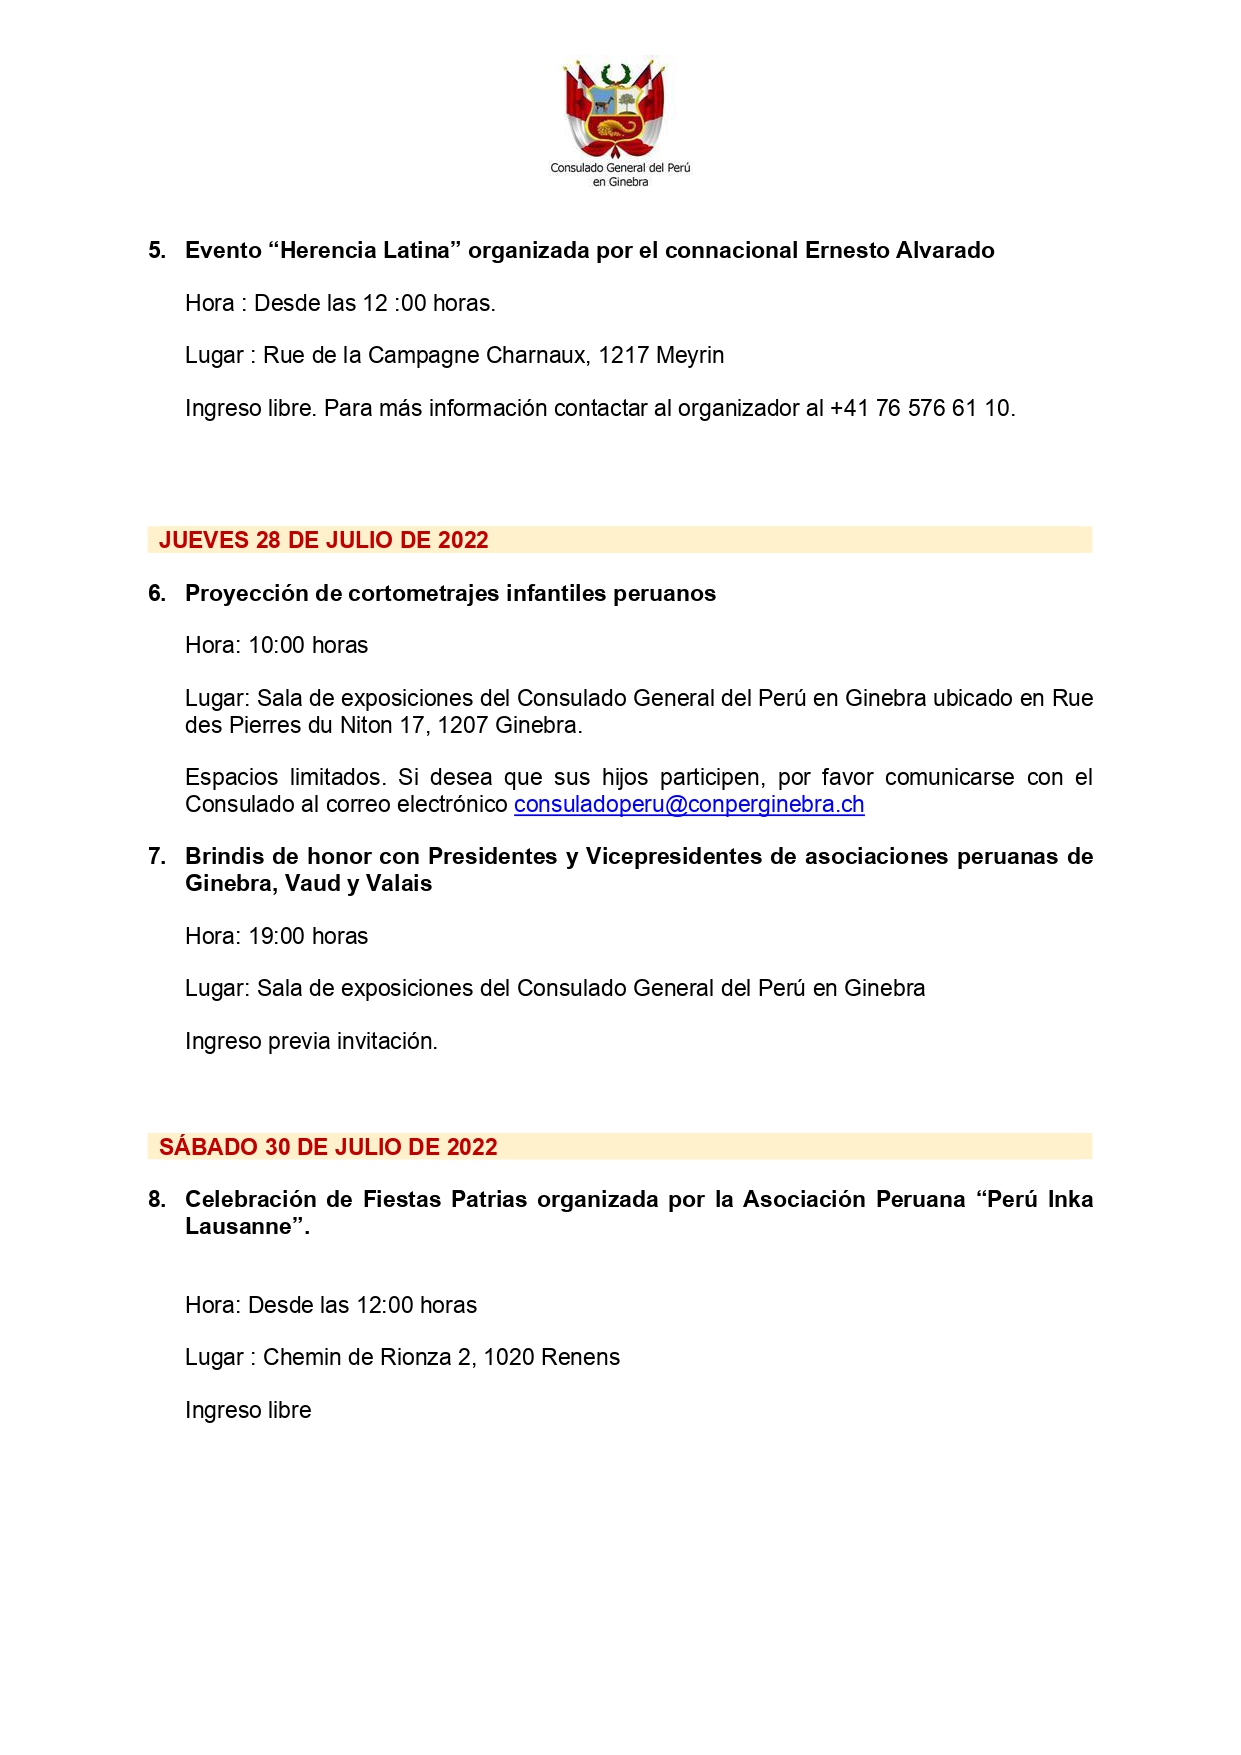 PROGRAMACIÓN DE ACTIVIDADES - FIESTAS PATRIAS 2022_page-0002.jpg